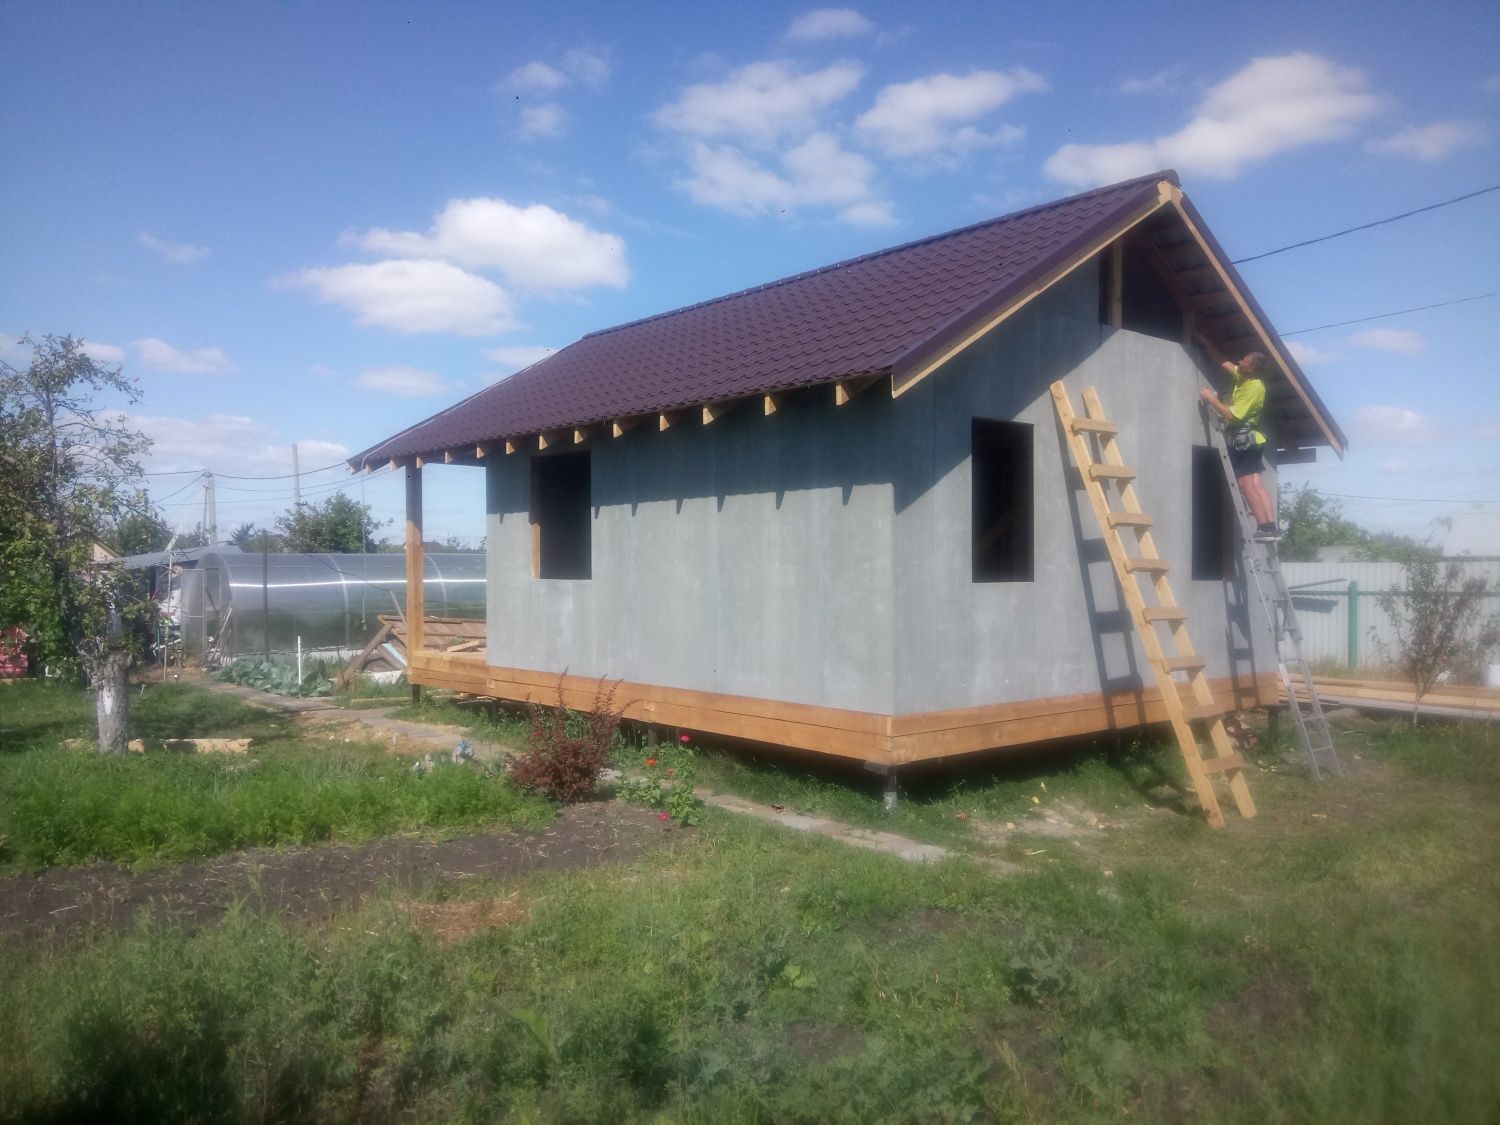 Строительство дачного дома в п.Спутник по технологии каркасного домостроения.